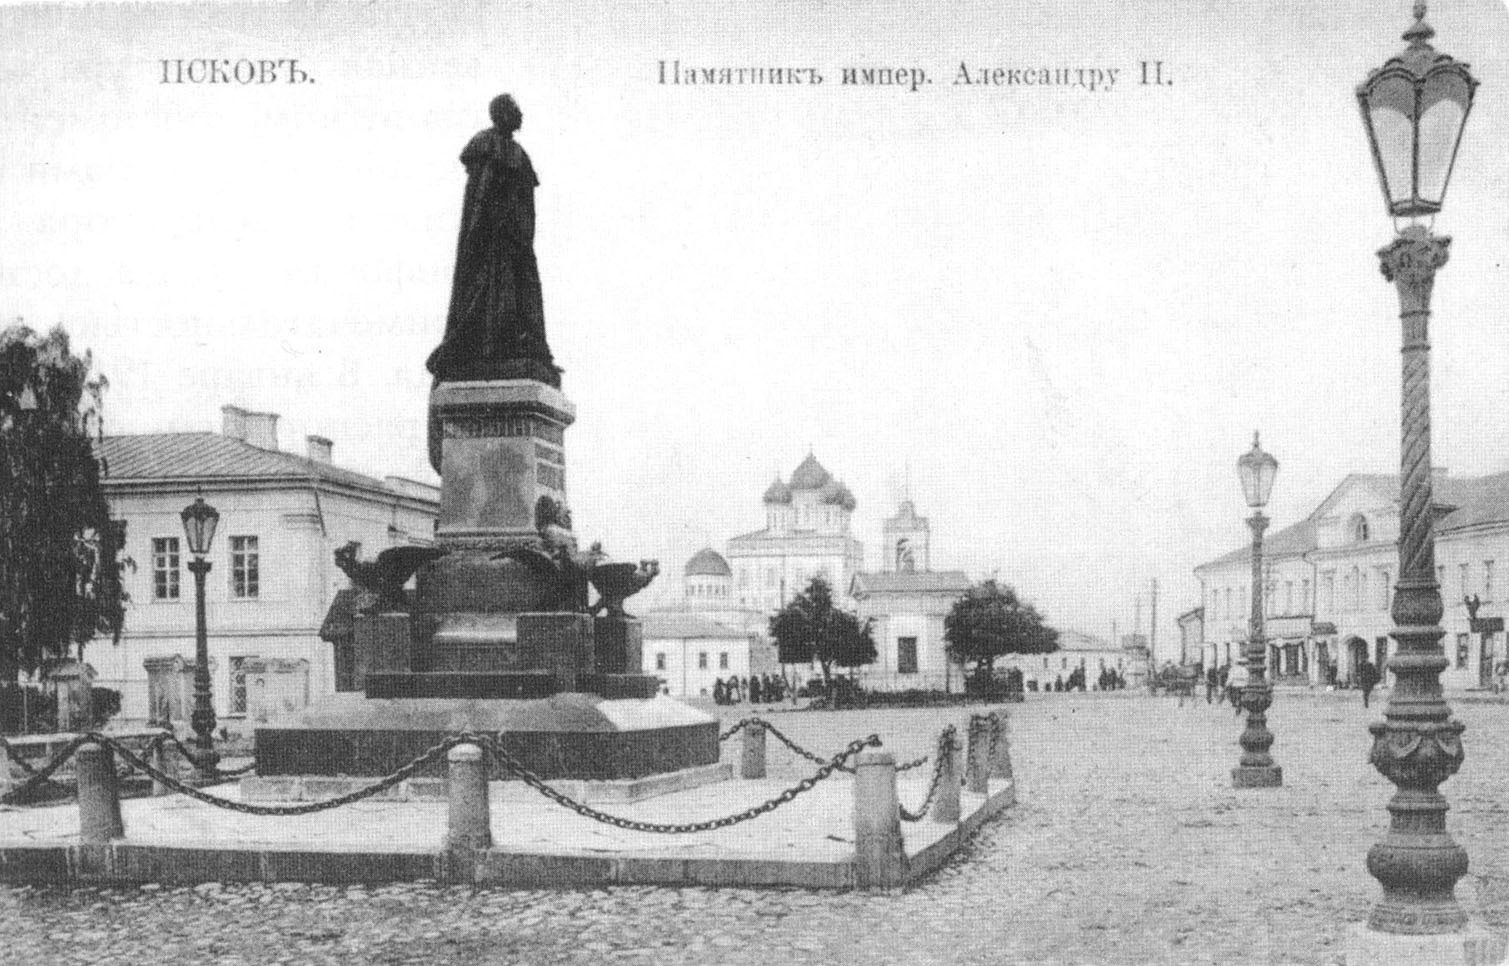 Псков. Памятник императору Александру II.